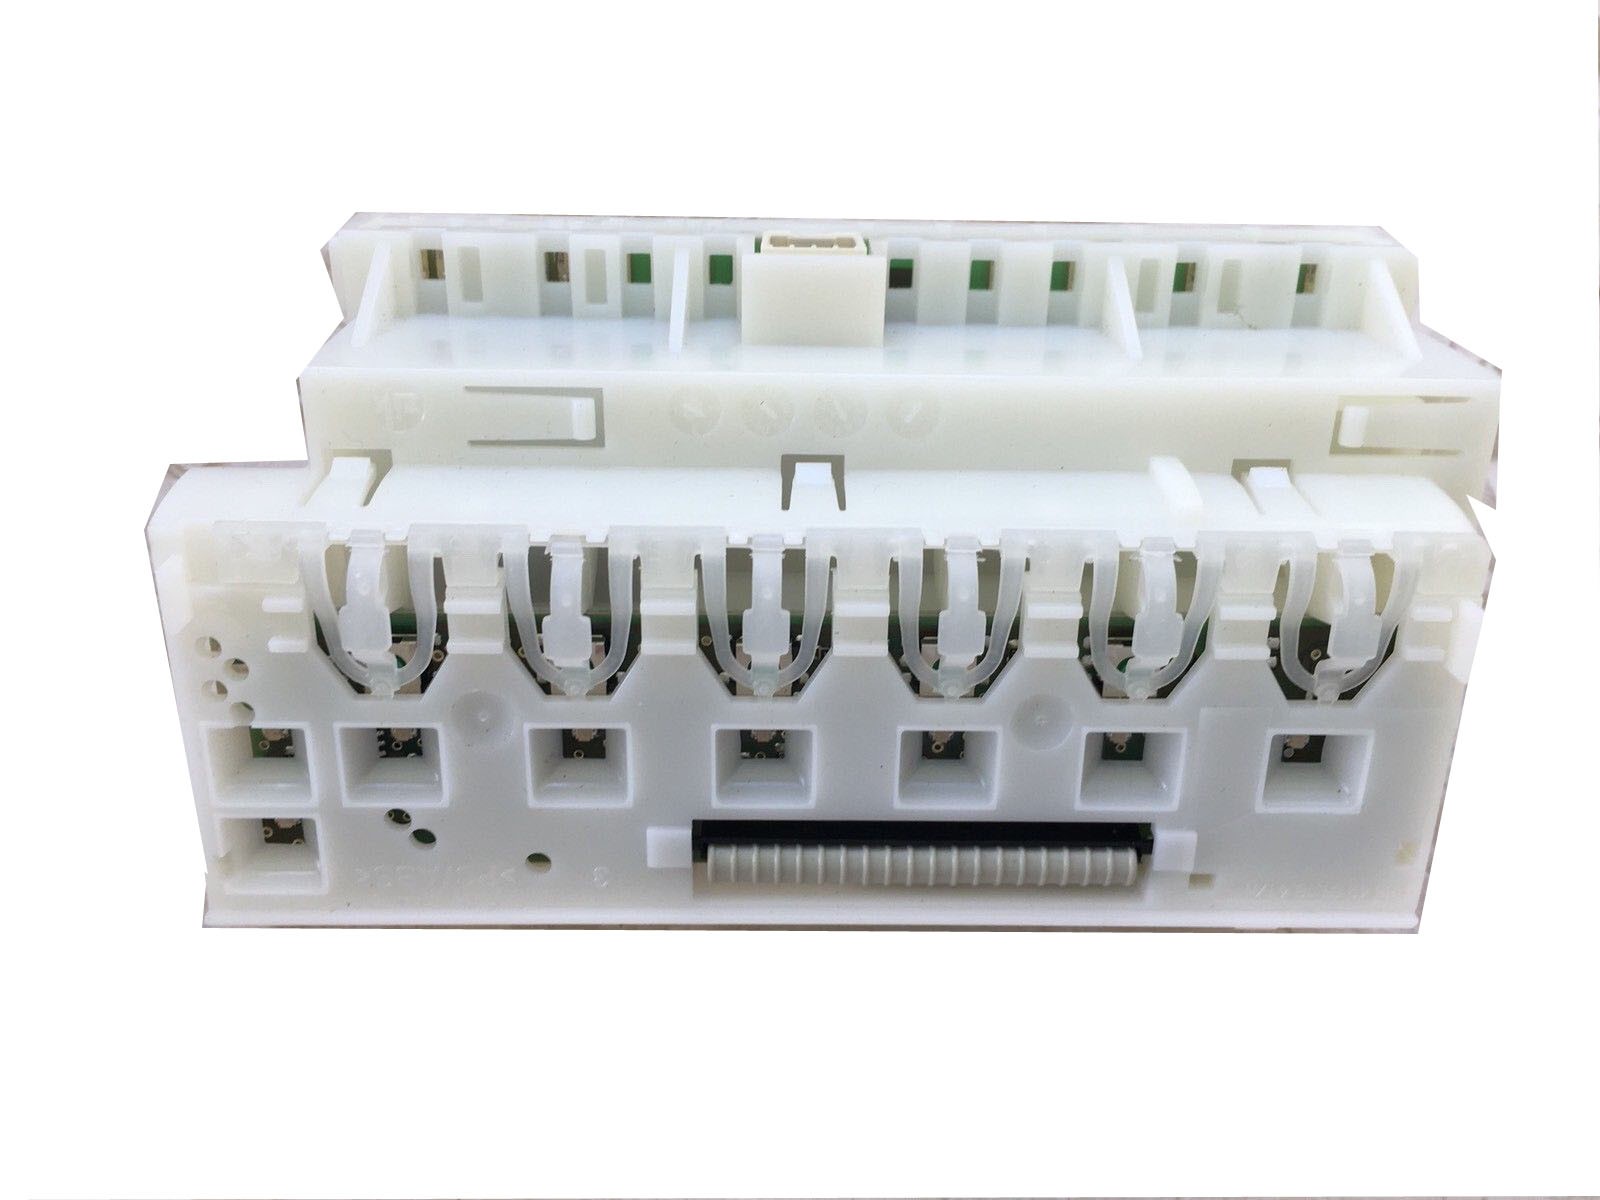 BOSCH DISHWASHER PCB MODEL SGI4335AU/49